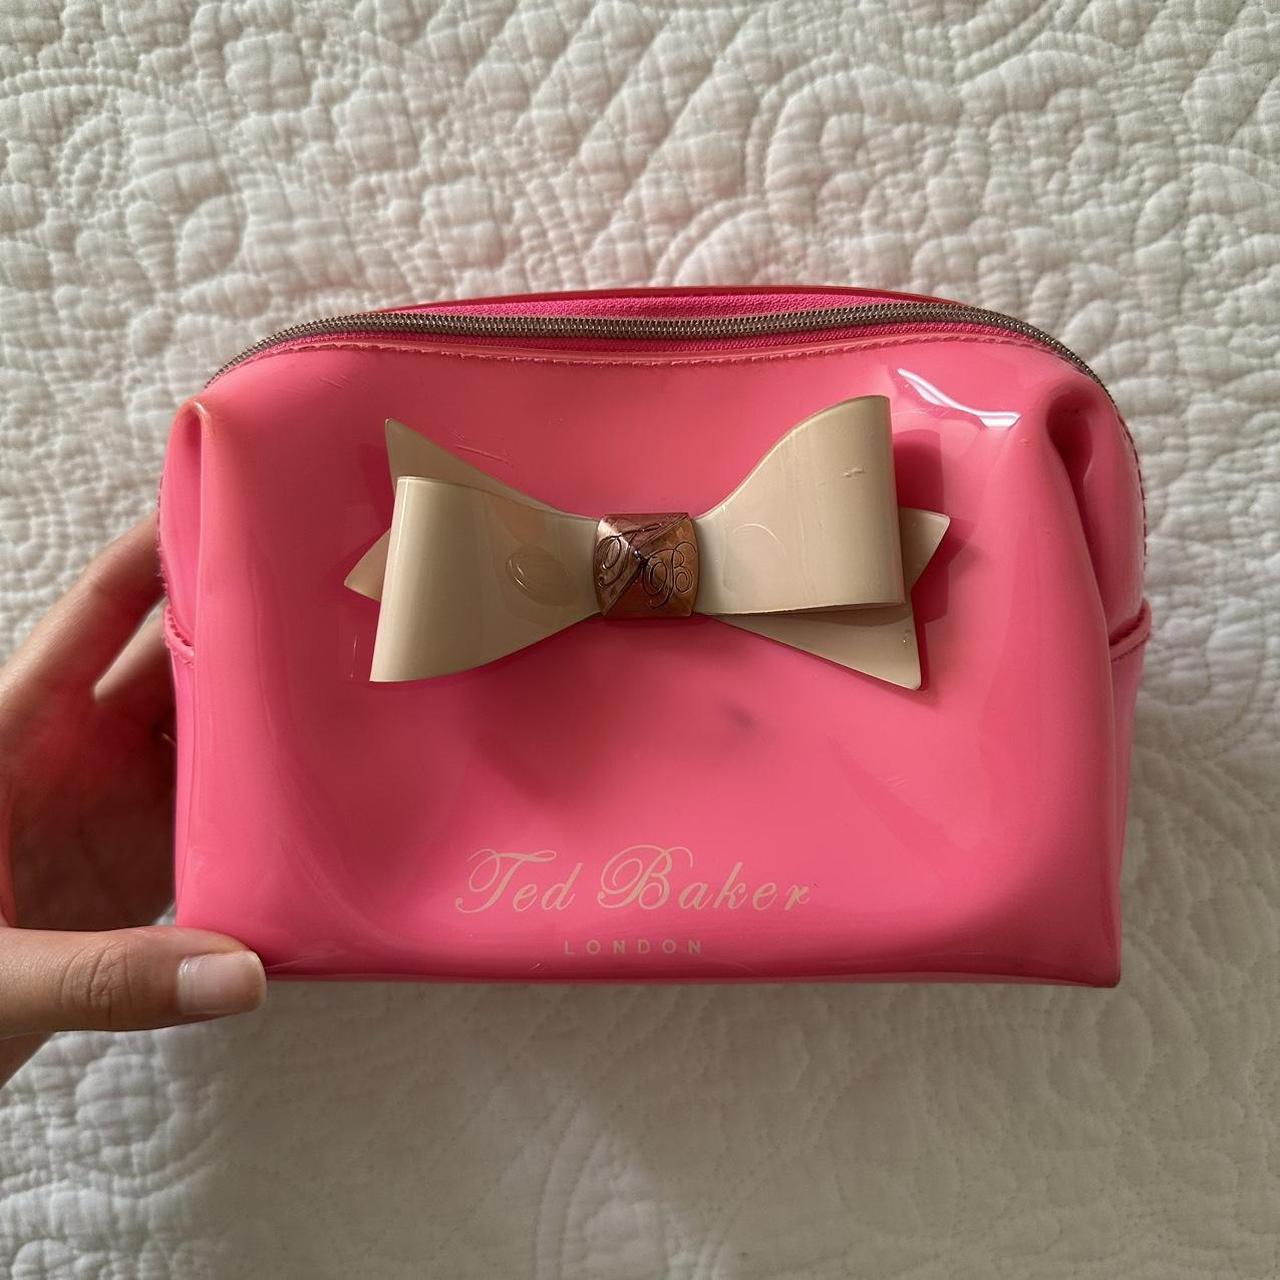 Adorable Pink Ted Baker Makeup Bag. Mini size. In... - Depop